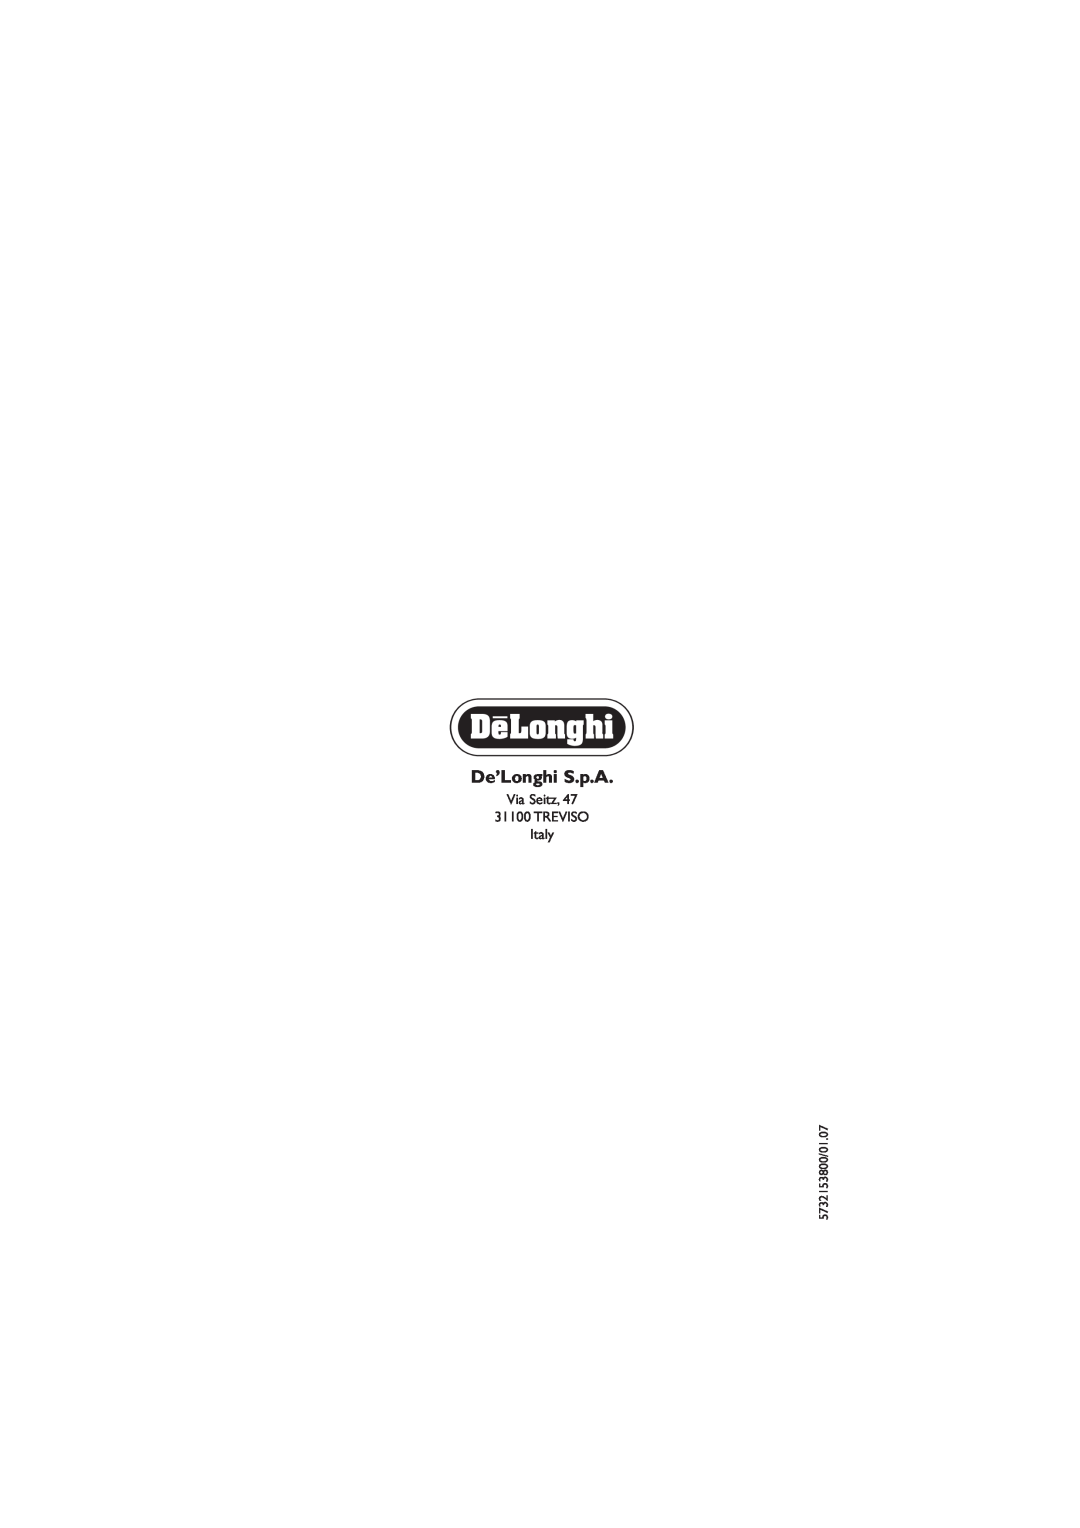 DeLonghi EC330 manual De’Longhi S.p.A, Via Seitz 31100 TREVISO Italy, 5732153800/01.07 